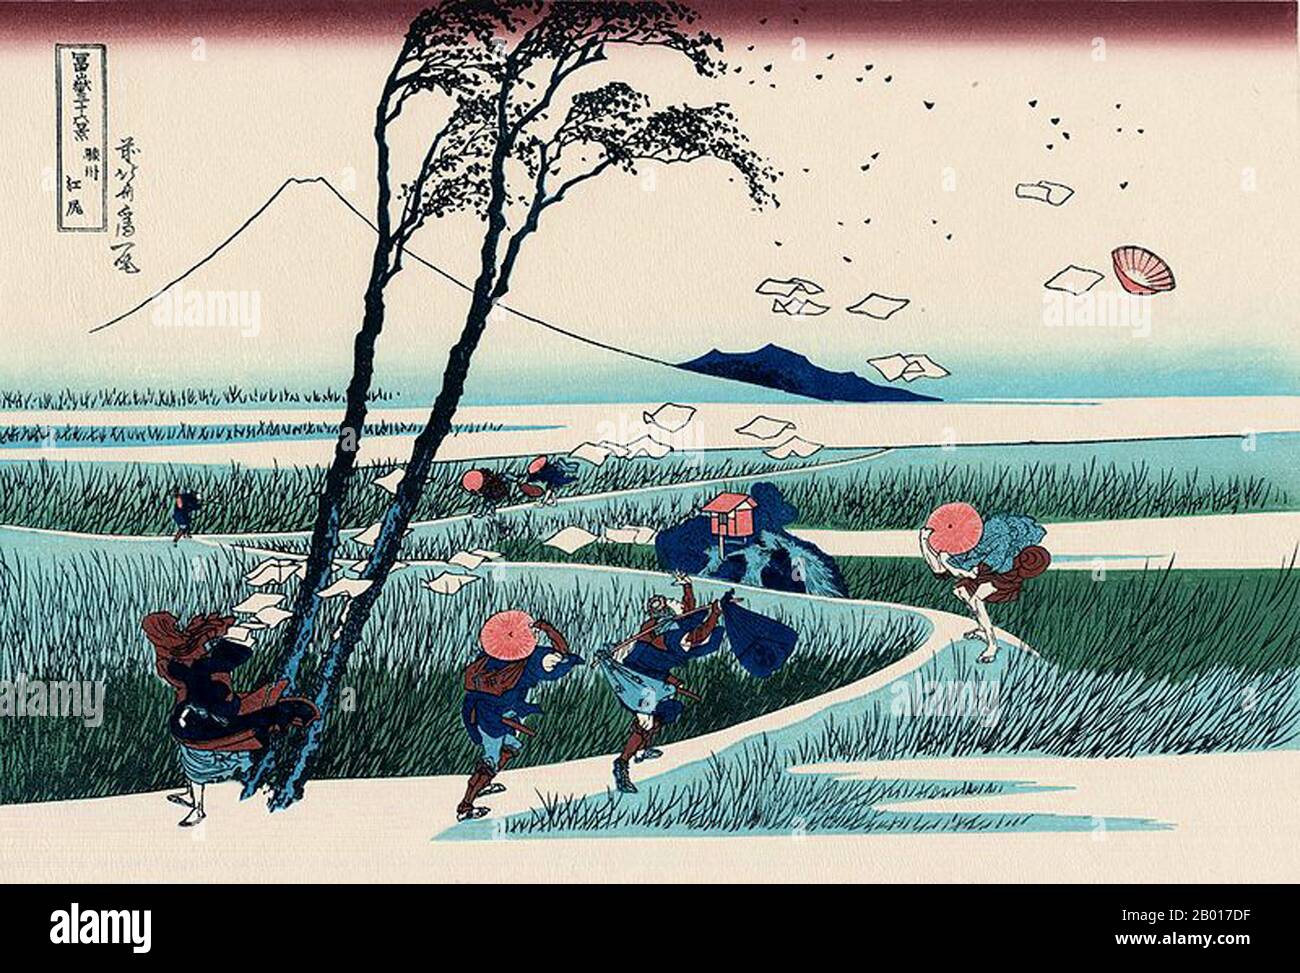 Japan: „‘Ejiri in der Provinz Suruga“. Ukiyo-e Holzschnitt aus der Serie ‘Thirty-Six views of Mount Fuji’ von Katsushika Hokusai (31. Oktober 1760 - 10. Mai 1849), 1830. ‘Thirty-Six Views of Mount Fuji’ ist eine Serie von Holzschnitten der japanischen Künstlerin Katsushika Hokusai, die „Sukiyo-e“ ‘. Die Serie zeigt den Fuji in unterschiedlichen Jahreszeiten und Wetterbedingungen an verschiedenen Orten und Entfernungen. Es besteht tatsächlich aus 46 Drucken, die zwischen 1826 und 1833 entstanden sind. Die ersten 36 wurden in die Originalpublikation aufgenommen, und aufgrund ihrer Popularität wurden nach der Originalpublikation 10 weitere hinzugefügt. Stockfoto